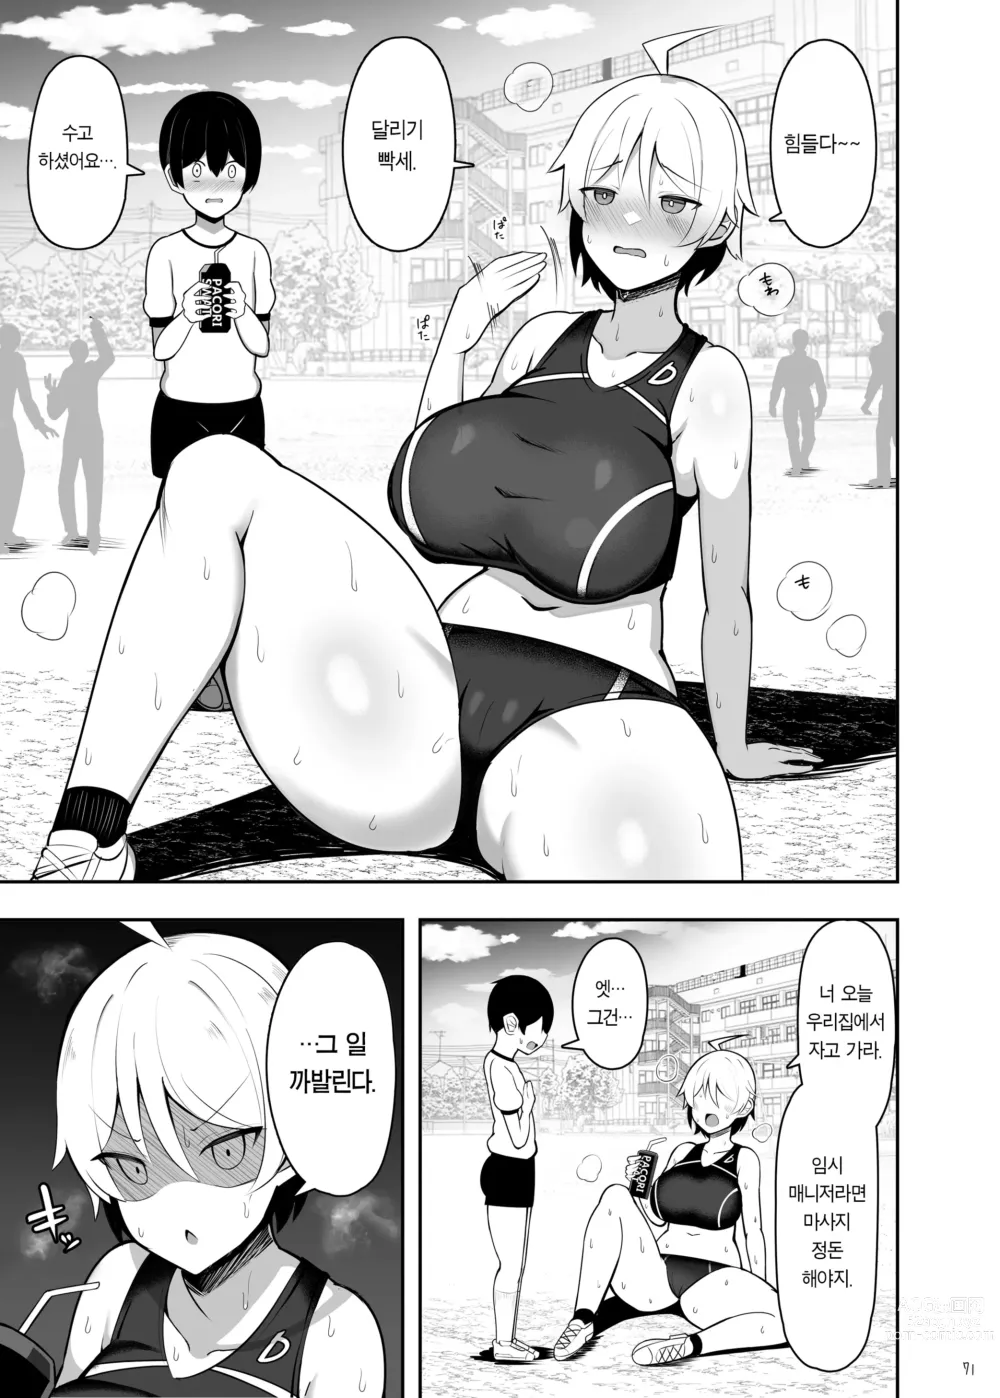 Page 72 of doujinshi 누나와 엄마와 진심교미